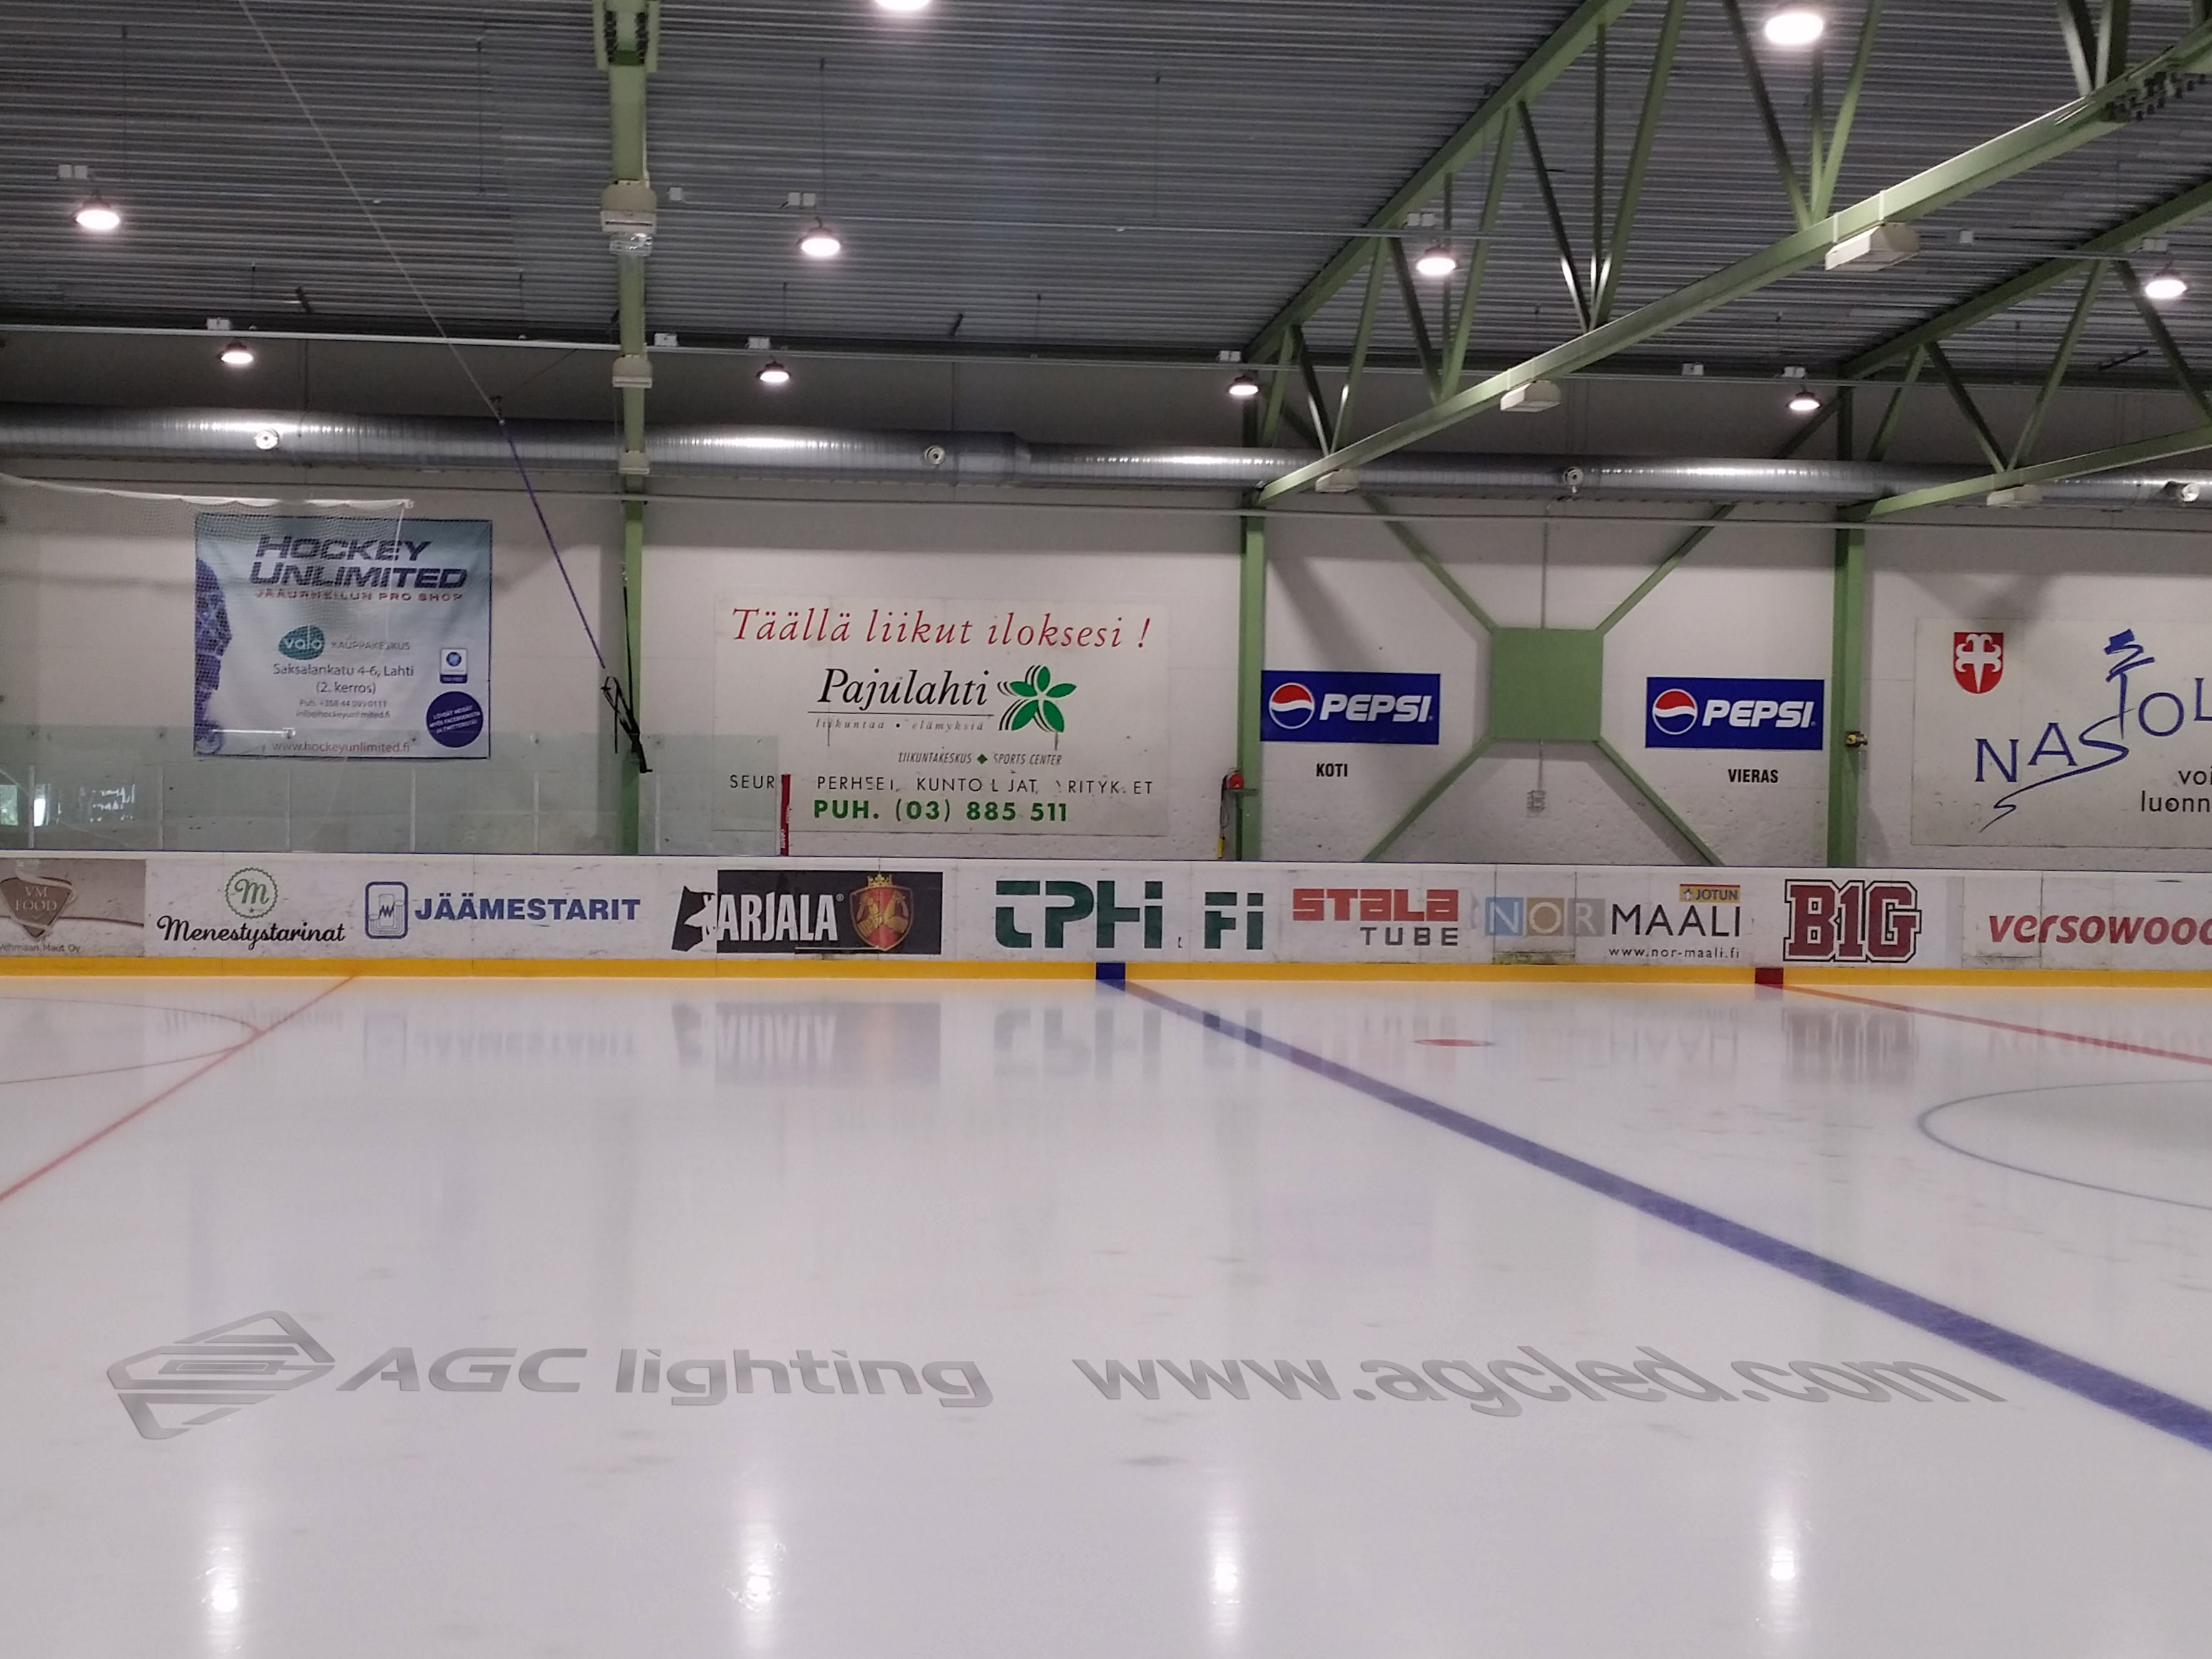 200W High Bay Light in Ice Hockey Rink